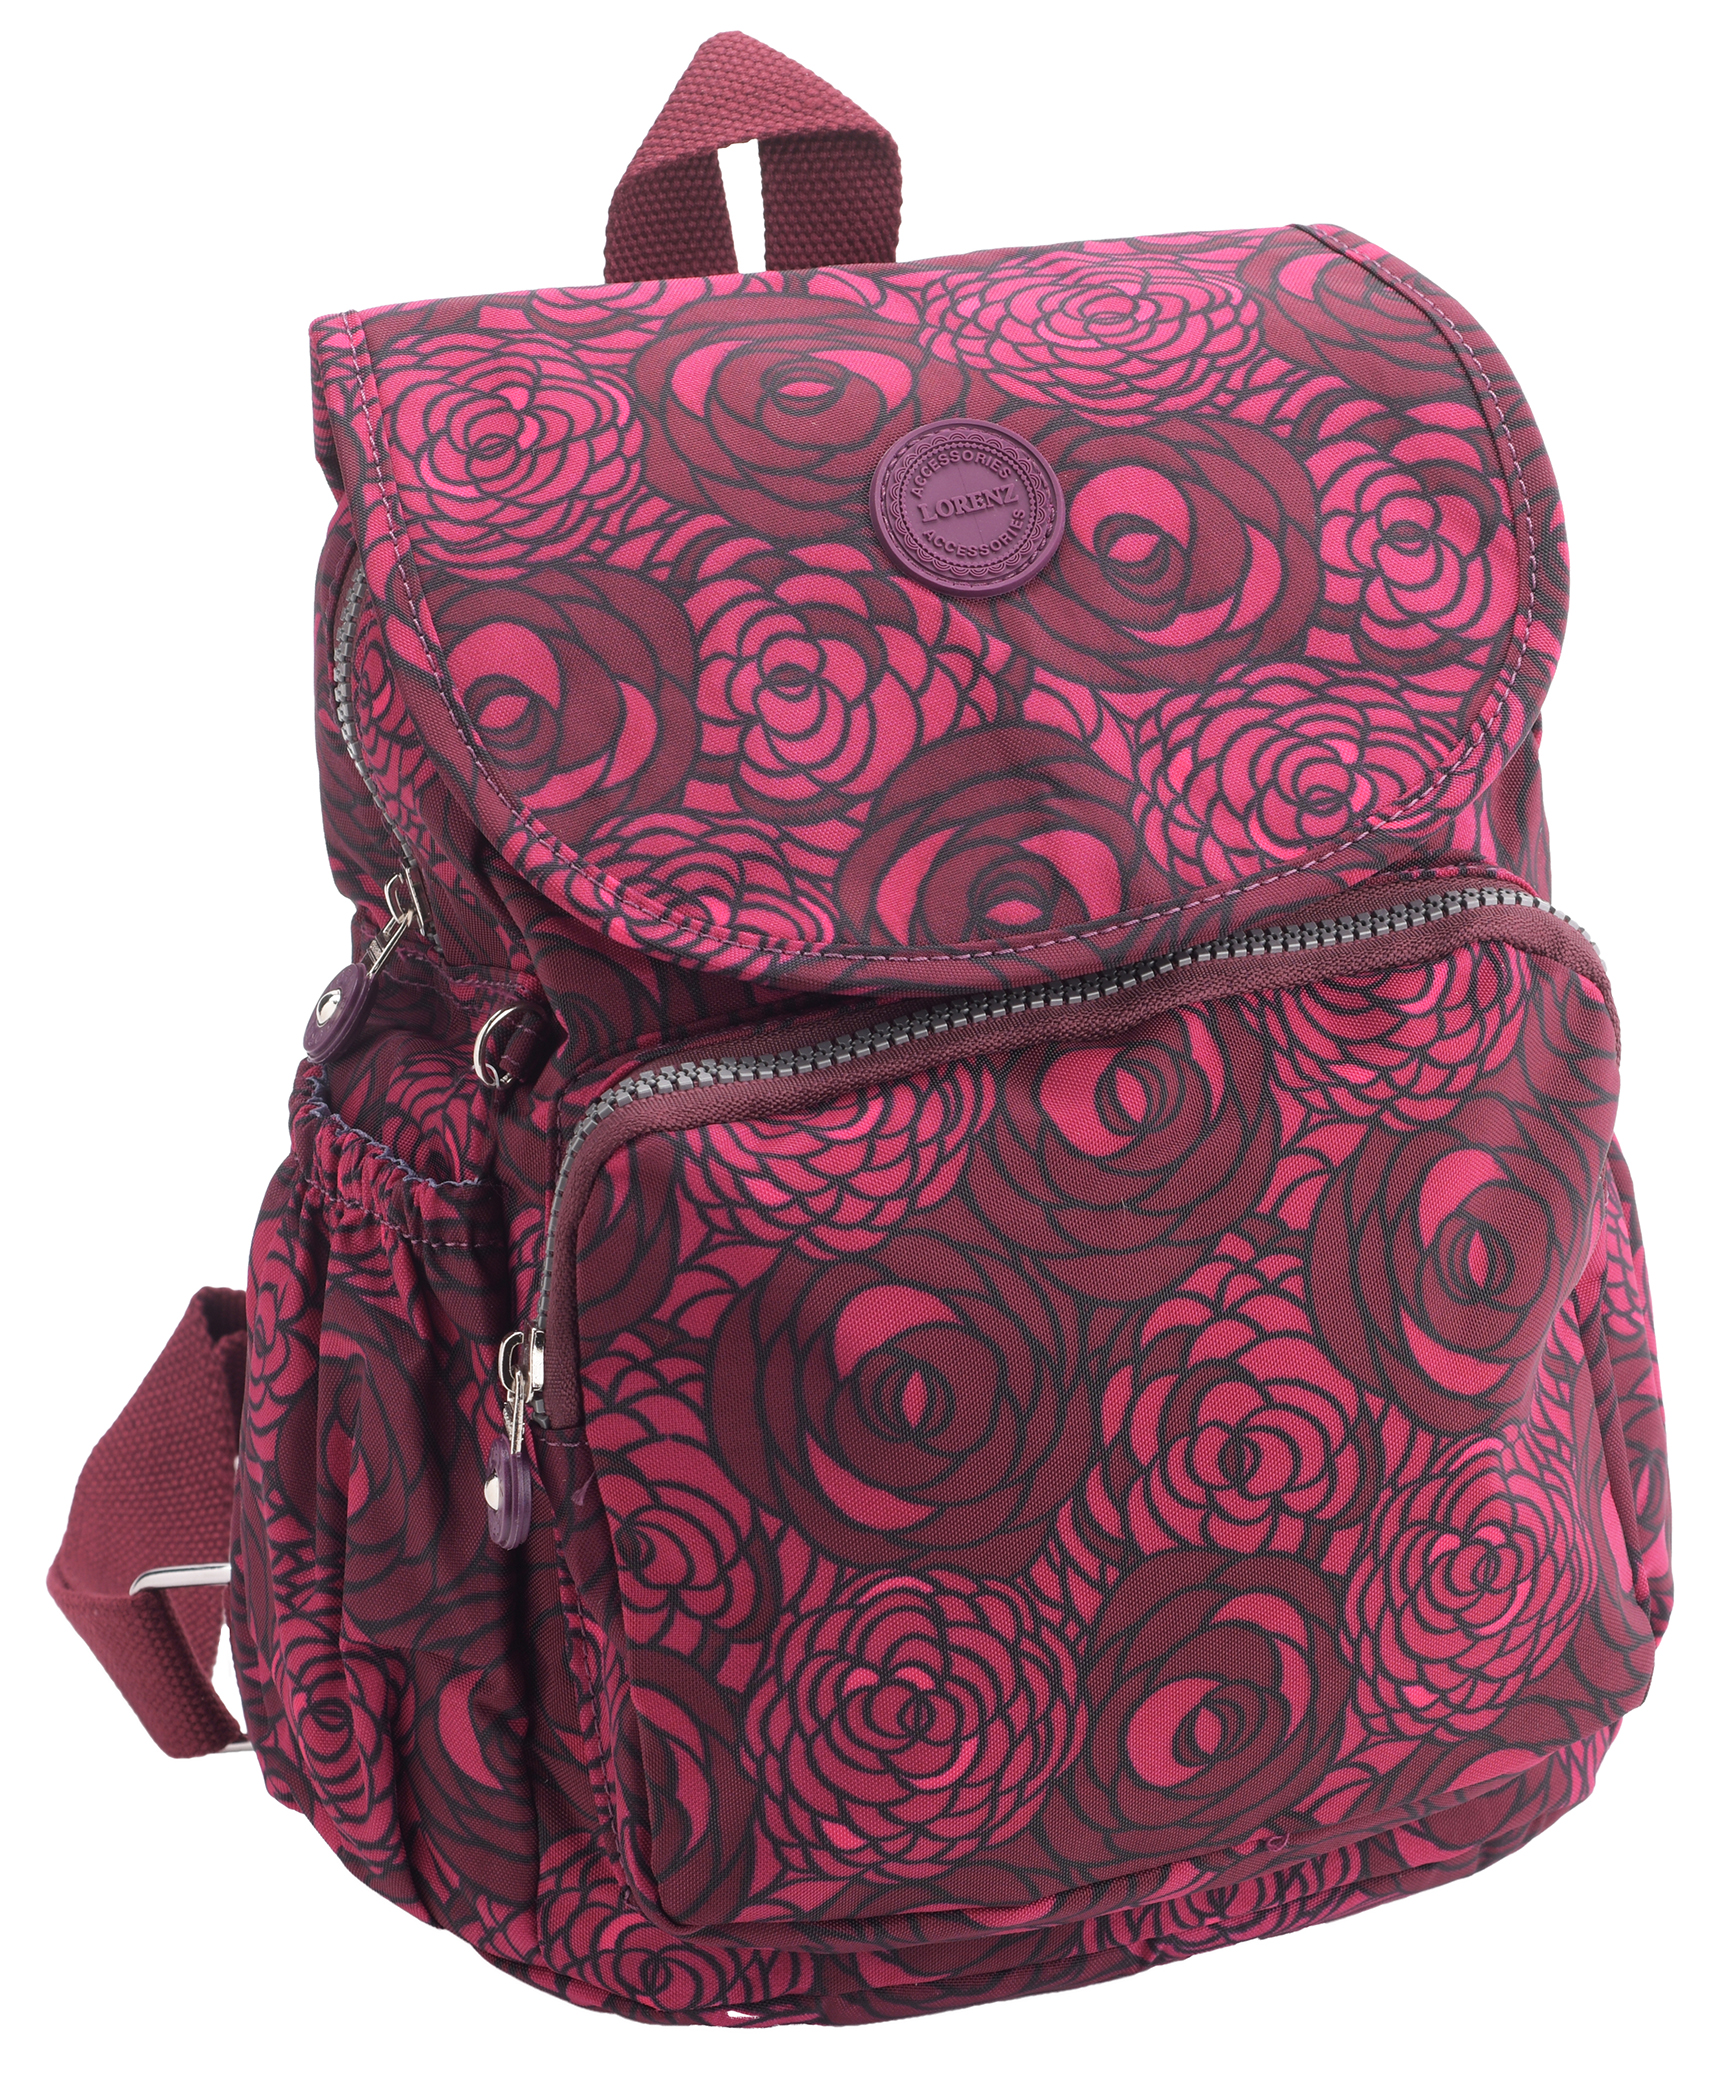 Ladies Lightweight Patterned Backpack Rucksack Handbag Water Resistant 